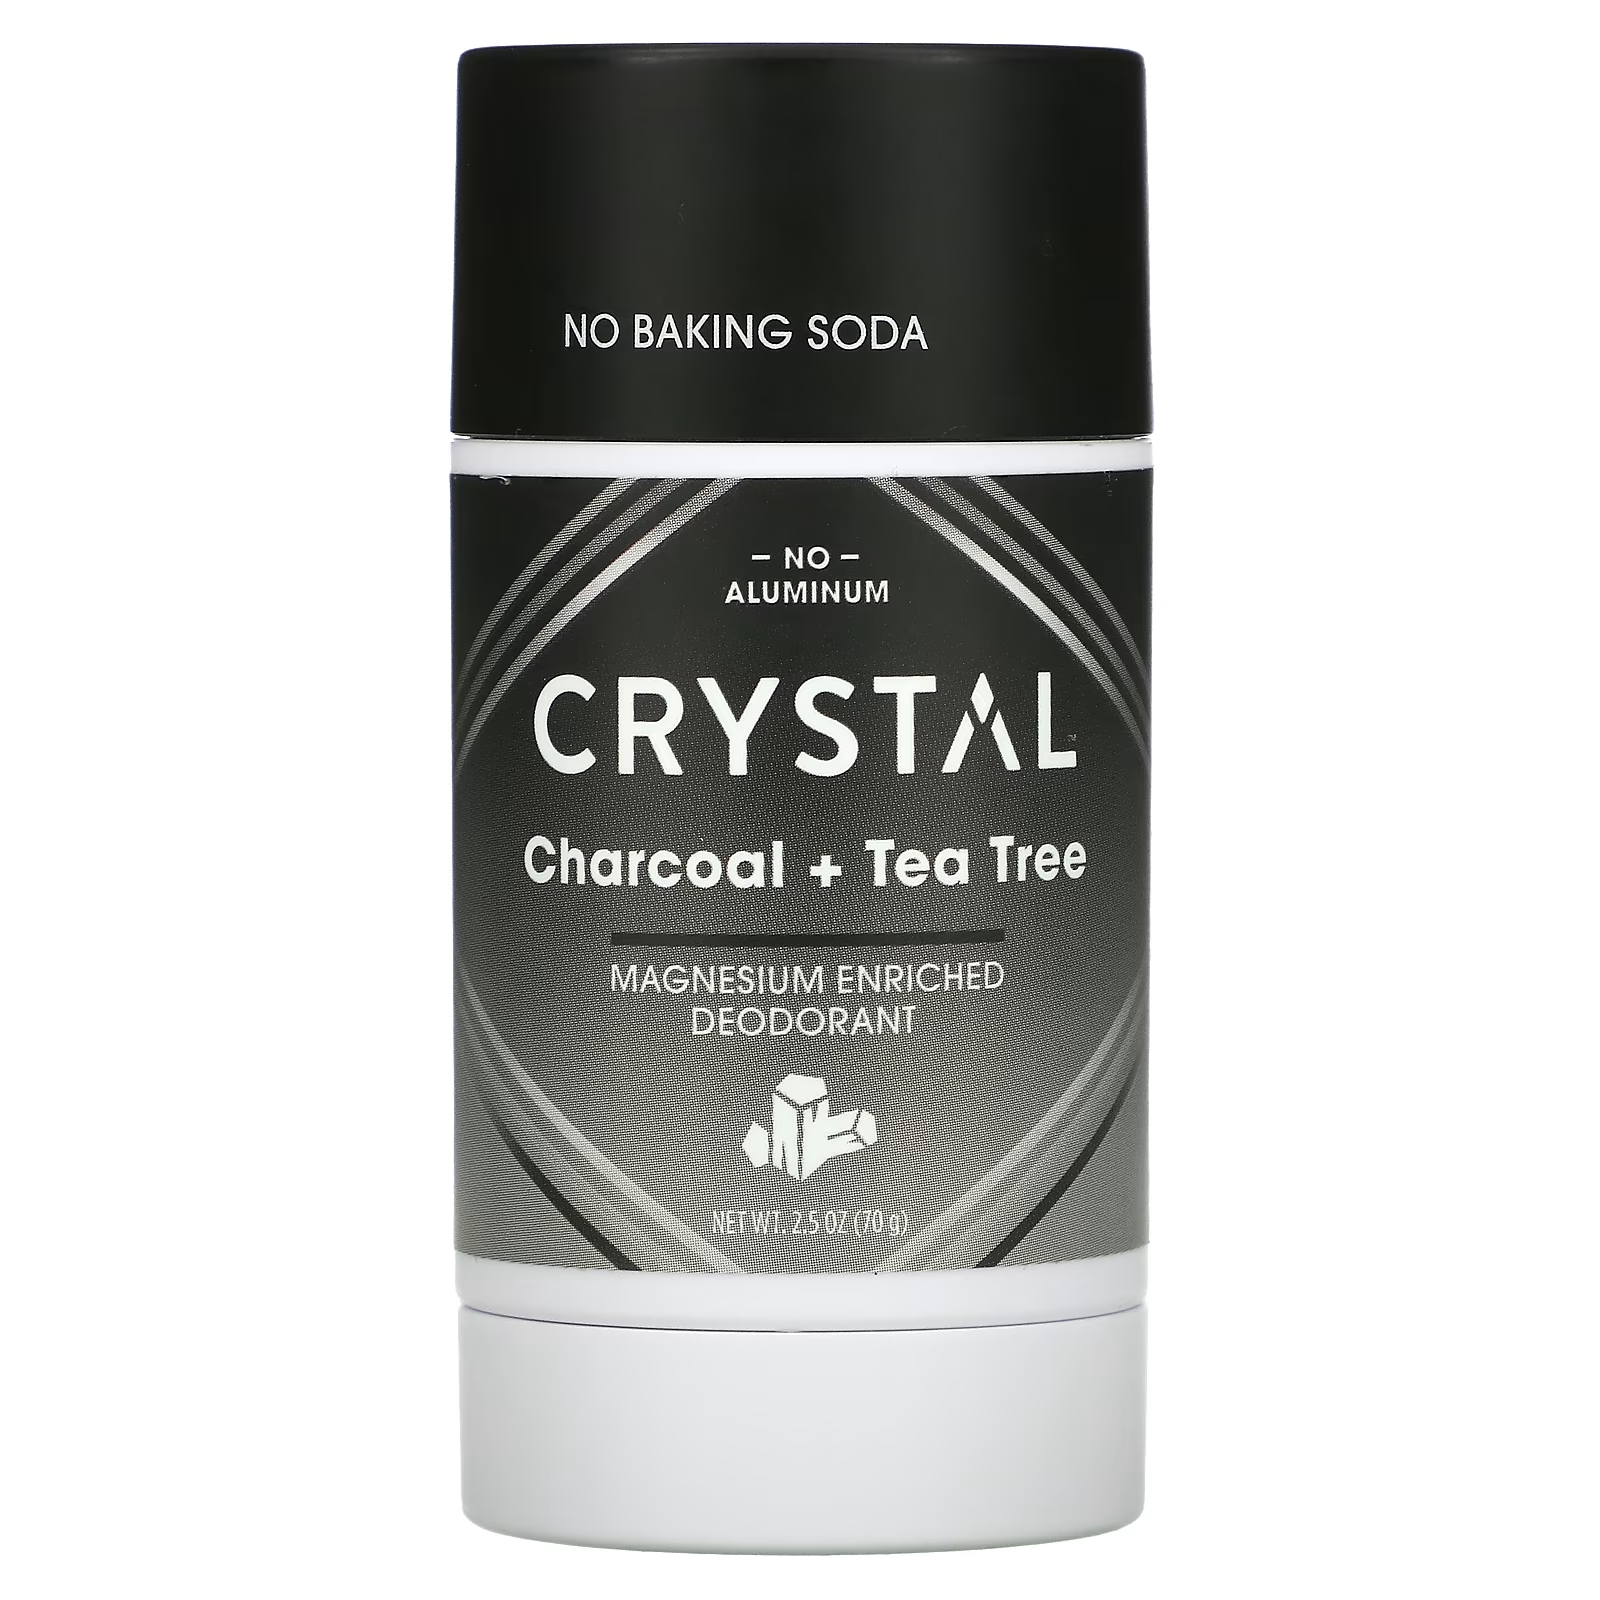 Дезодорант Crystal обогащенный магнием, уголь + чайное дерево crystal обогащенный магнием дезодорант clean fresh 70 г 2 5 унции